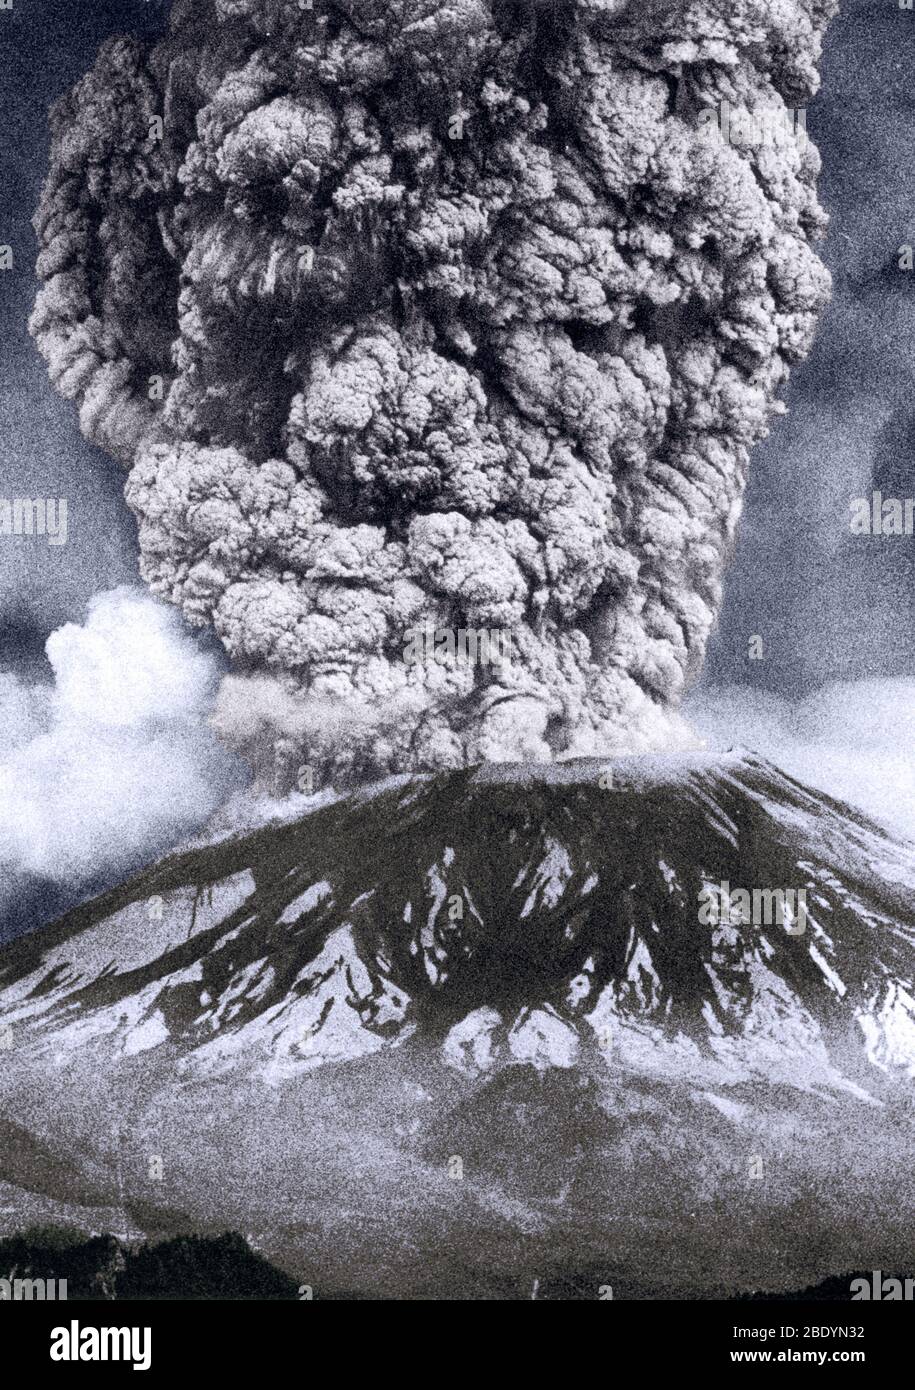 Le mont St. Helens, Washington, est le volcan le plus actif de la chaîne Cascade. Le premier signe d'activité au Mont St. Helens au printemps 1980 fut une série de petits tremblements de terre qui ont commencé le 16 mars. Les explosions de vapeur du 27 mars ont fait un cratère à travers le bouchon de glace du sommet du volcan. En une semaine, le cratère avait atteint environ 1 300 pieds de diamètre et deux systèmes de fissures géantes ont traversé toute la zone du sommet. Au 17 mai, plus de 10 000 tremblements de terre avaient secoué le volcan et le flanc nord avait grandi vers l'extérieur d'au moins 450 pieds pour former une poussée perceptible. Une telle déformation dramatique du vol Banque D'Images